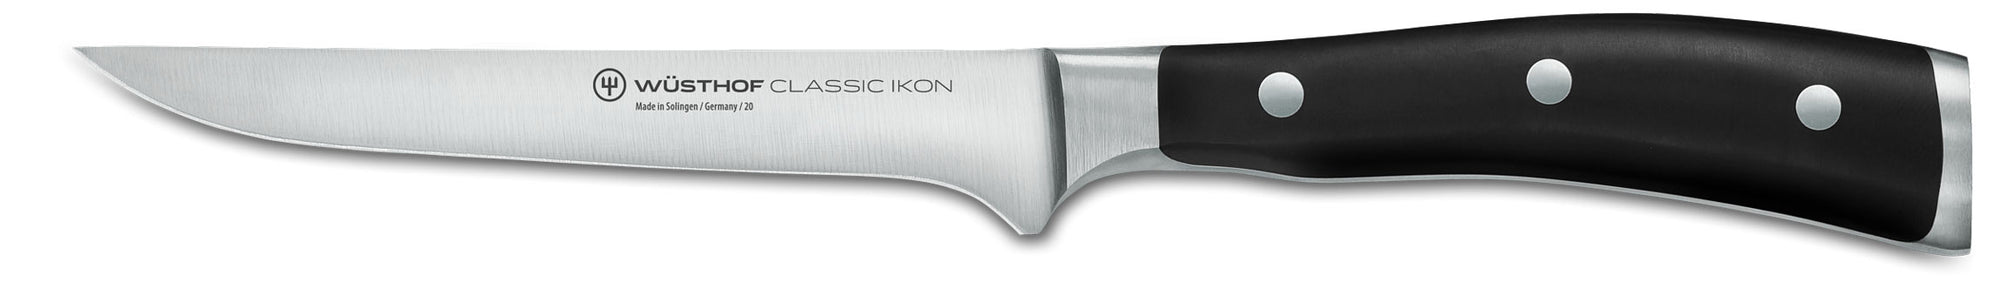 Wusthof Classic IKON boning knife Canada 4616